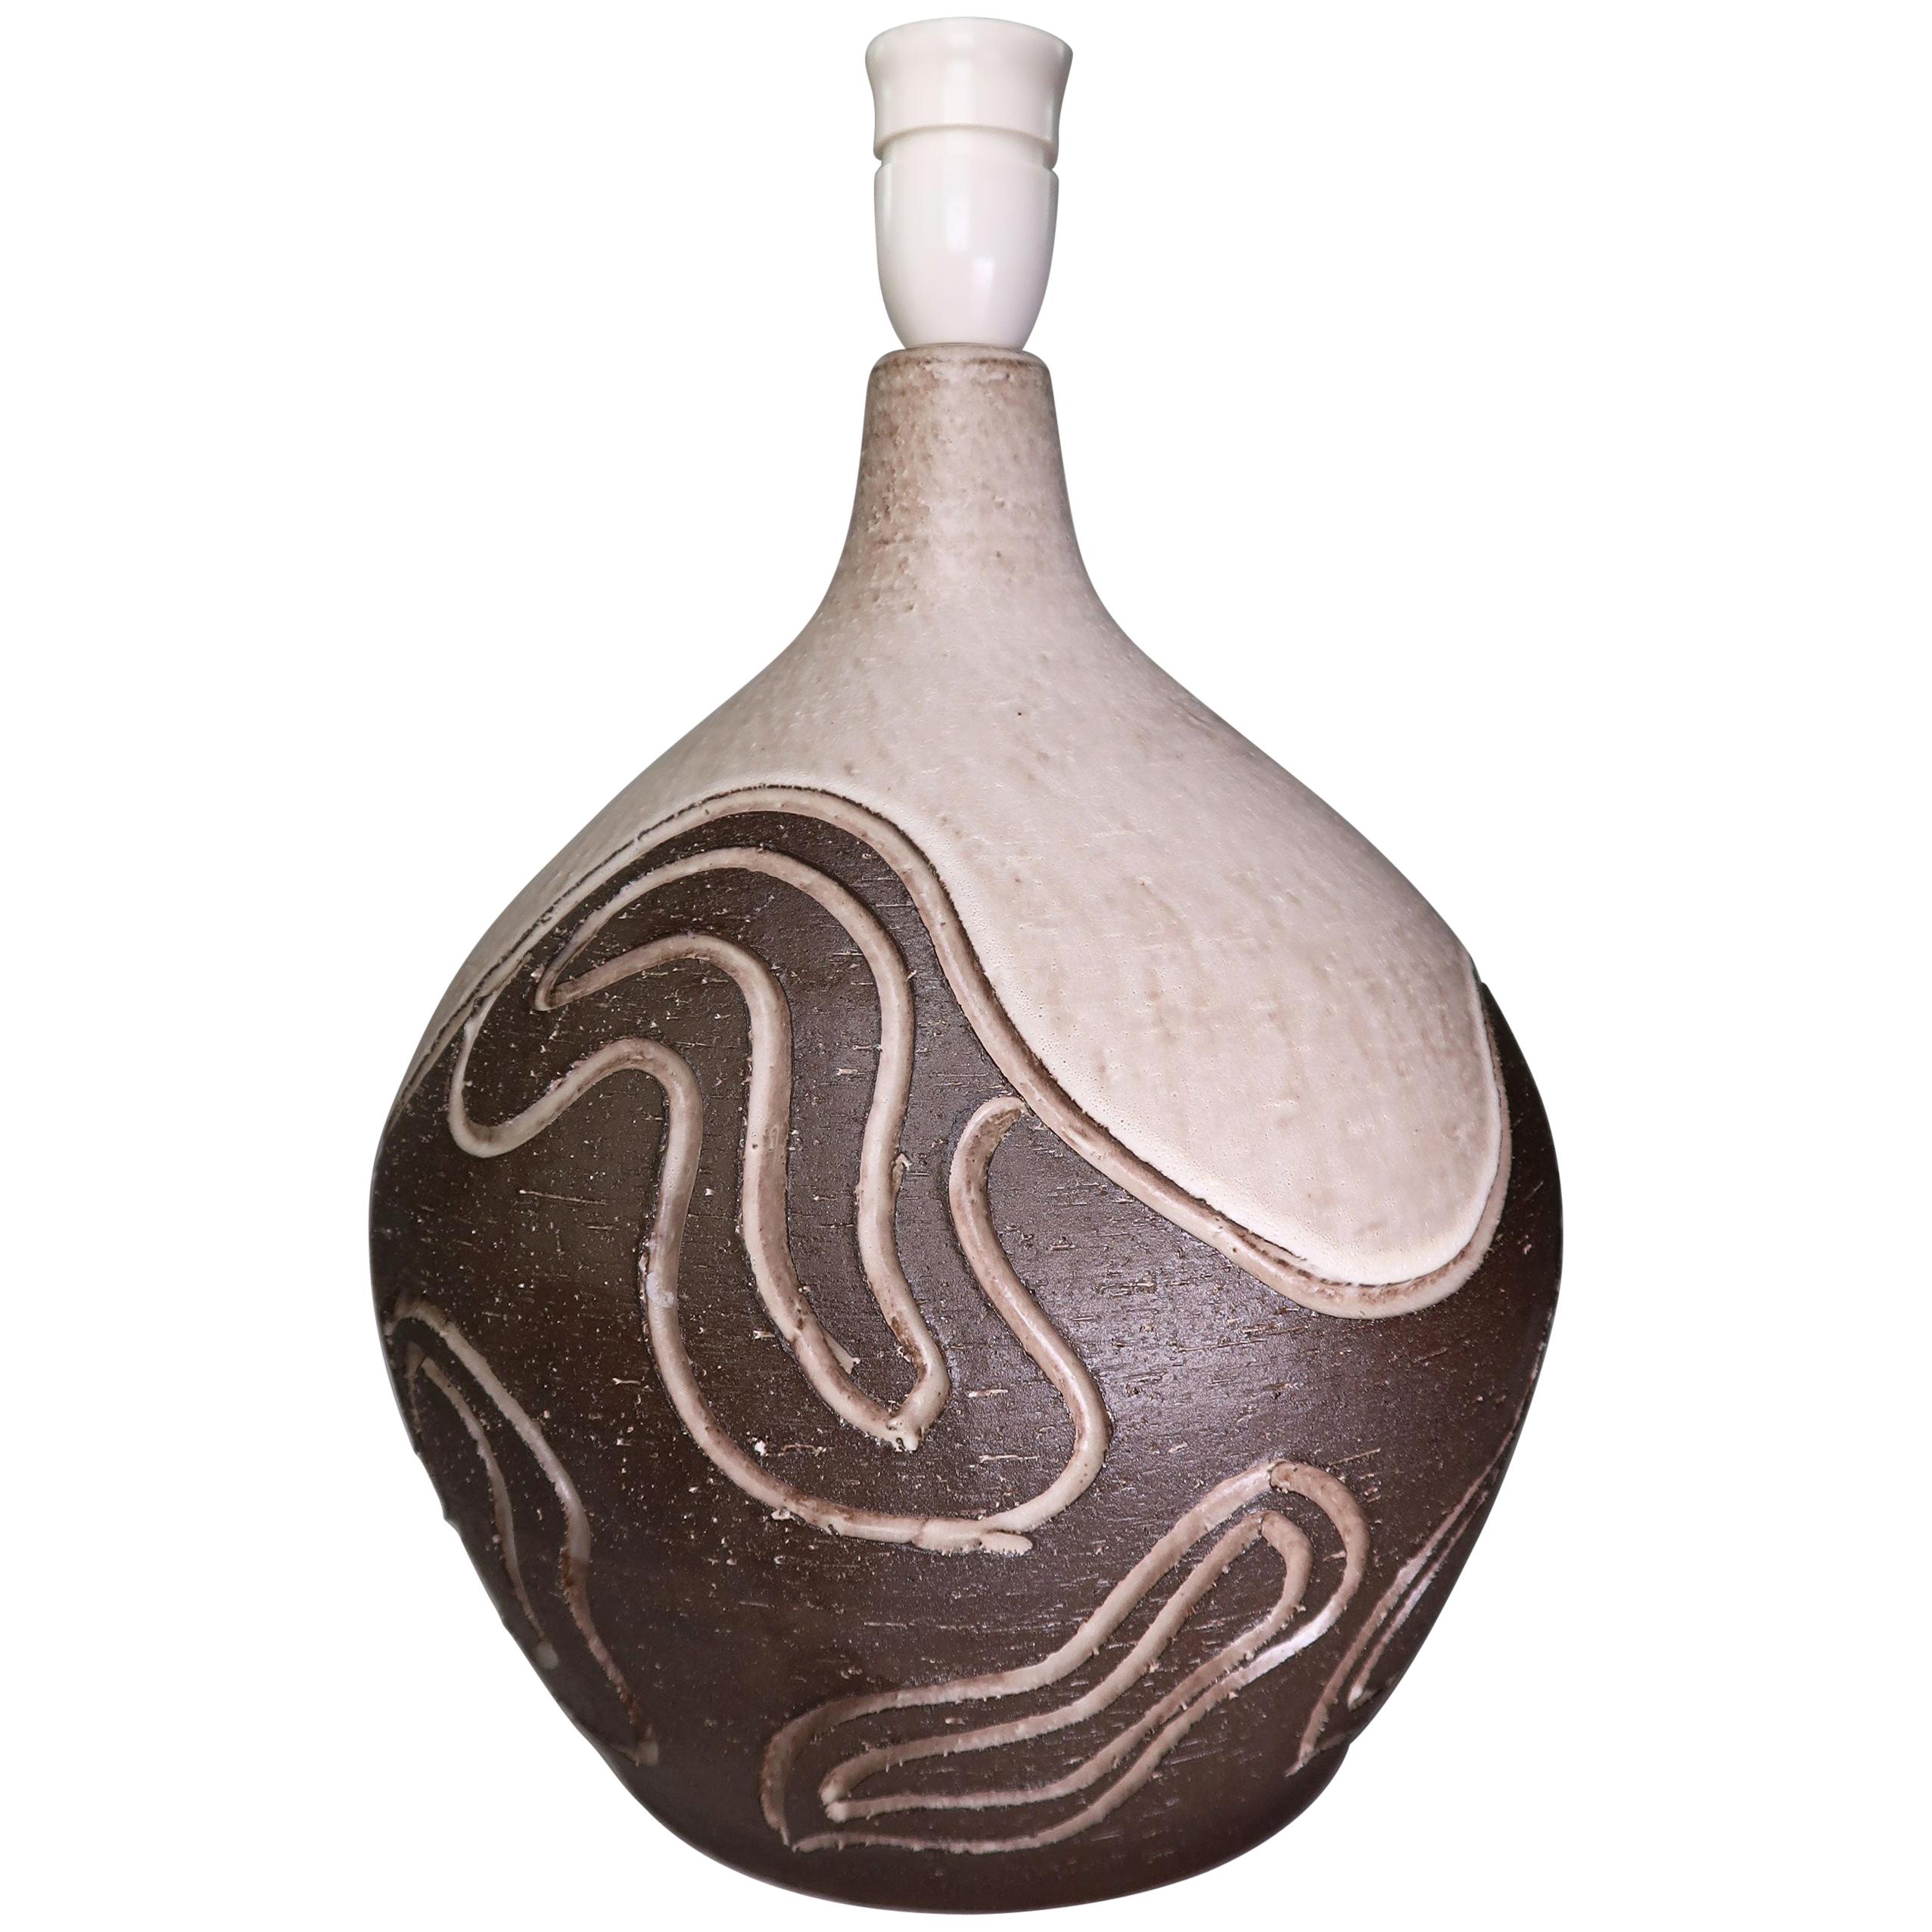 Große Løvemose Organic Modern Stoneware Wavy Relief Tischlampe, 1960er Jahre